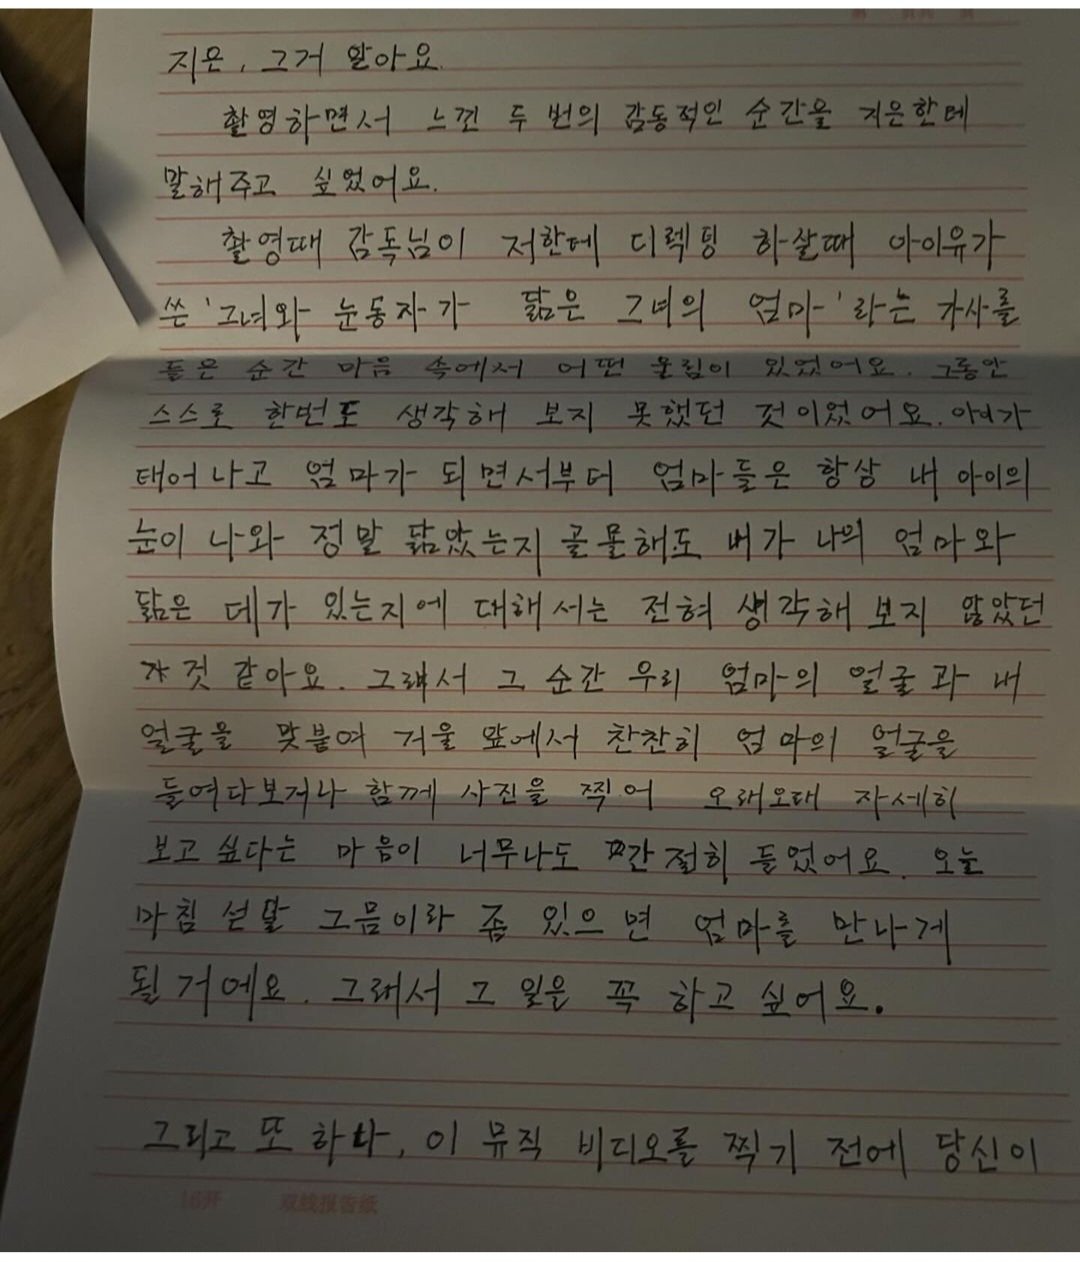 탕웨이가 아이유에게 써준 손편지